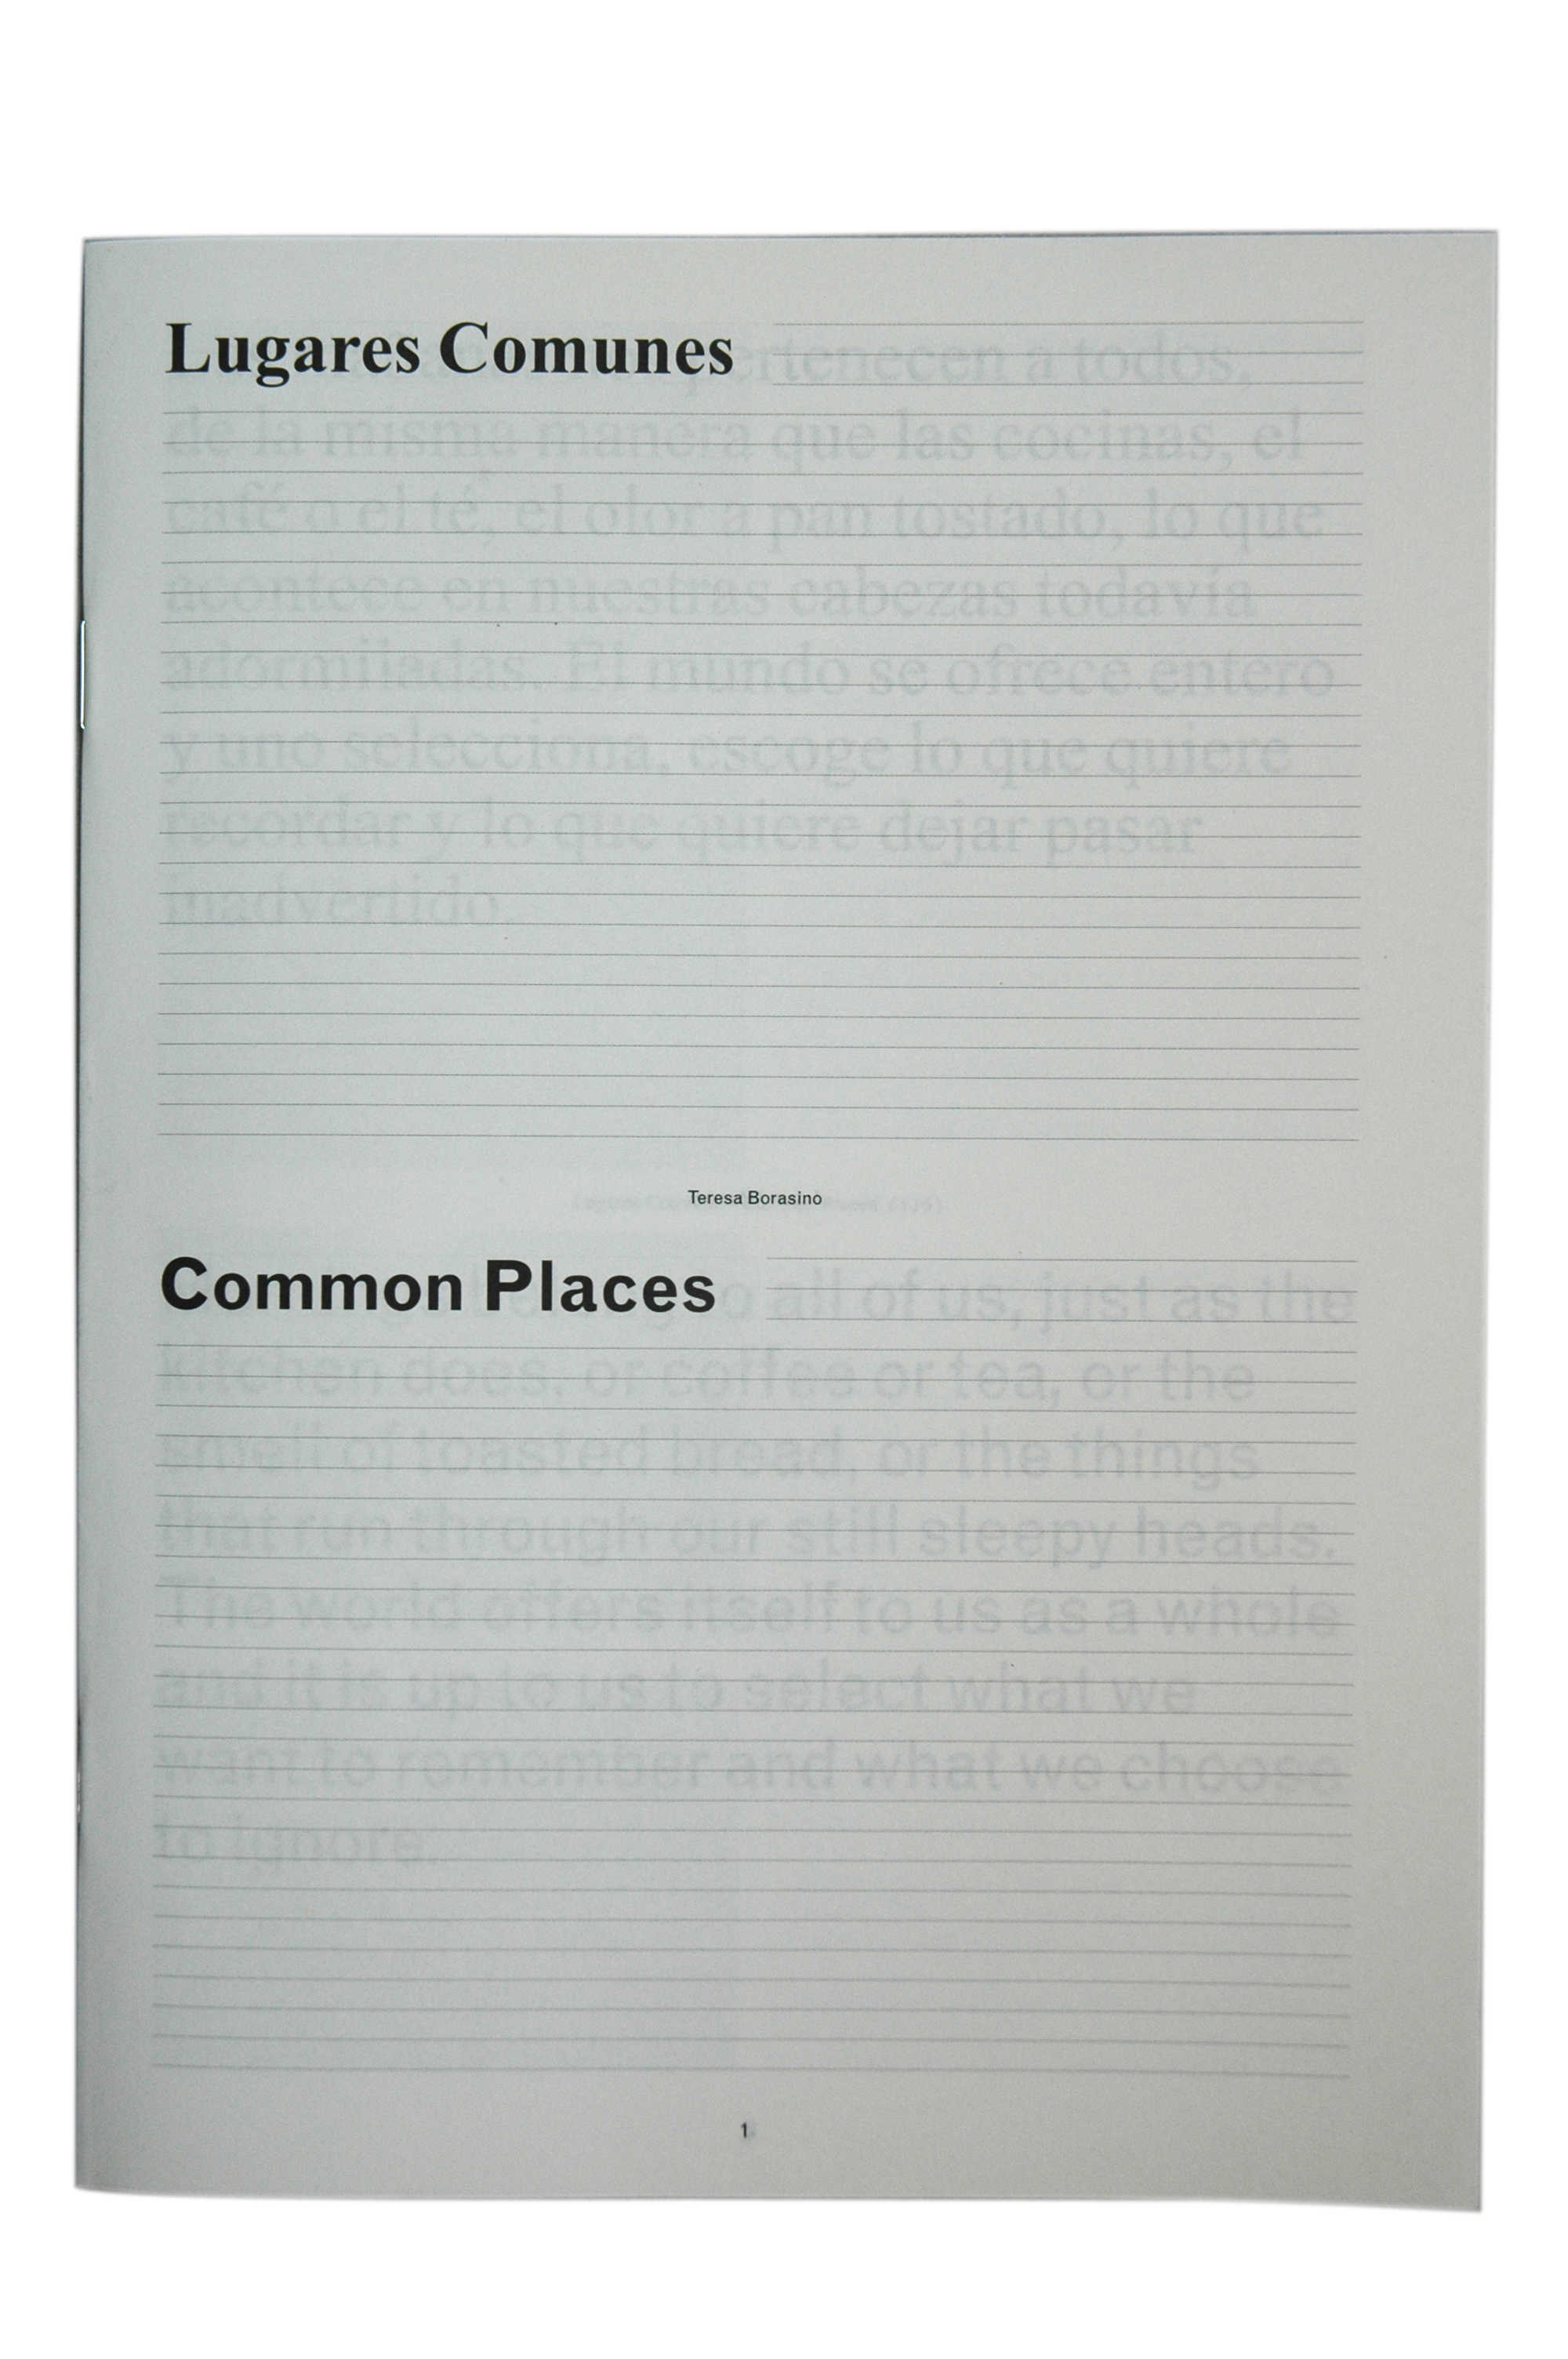 Teresa Borasino: Common Places [cover]